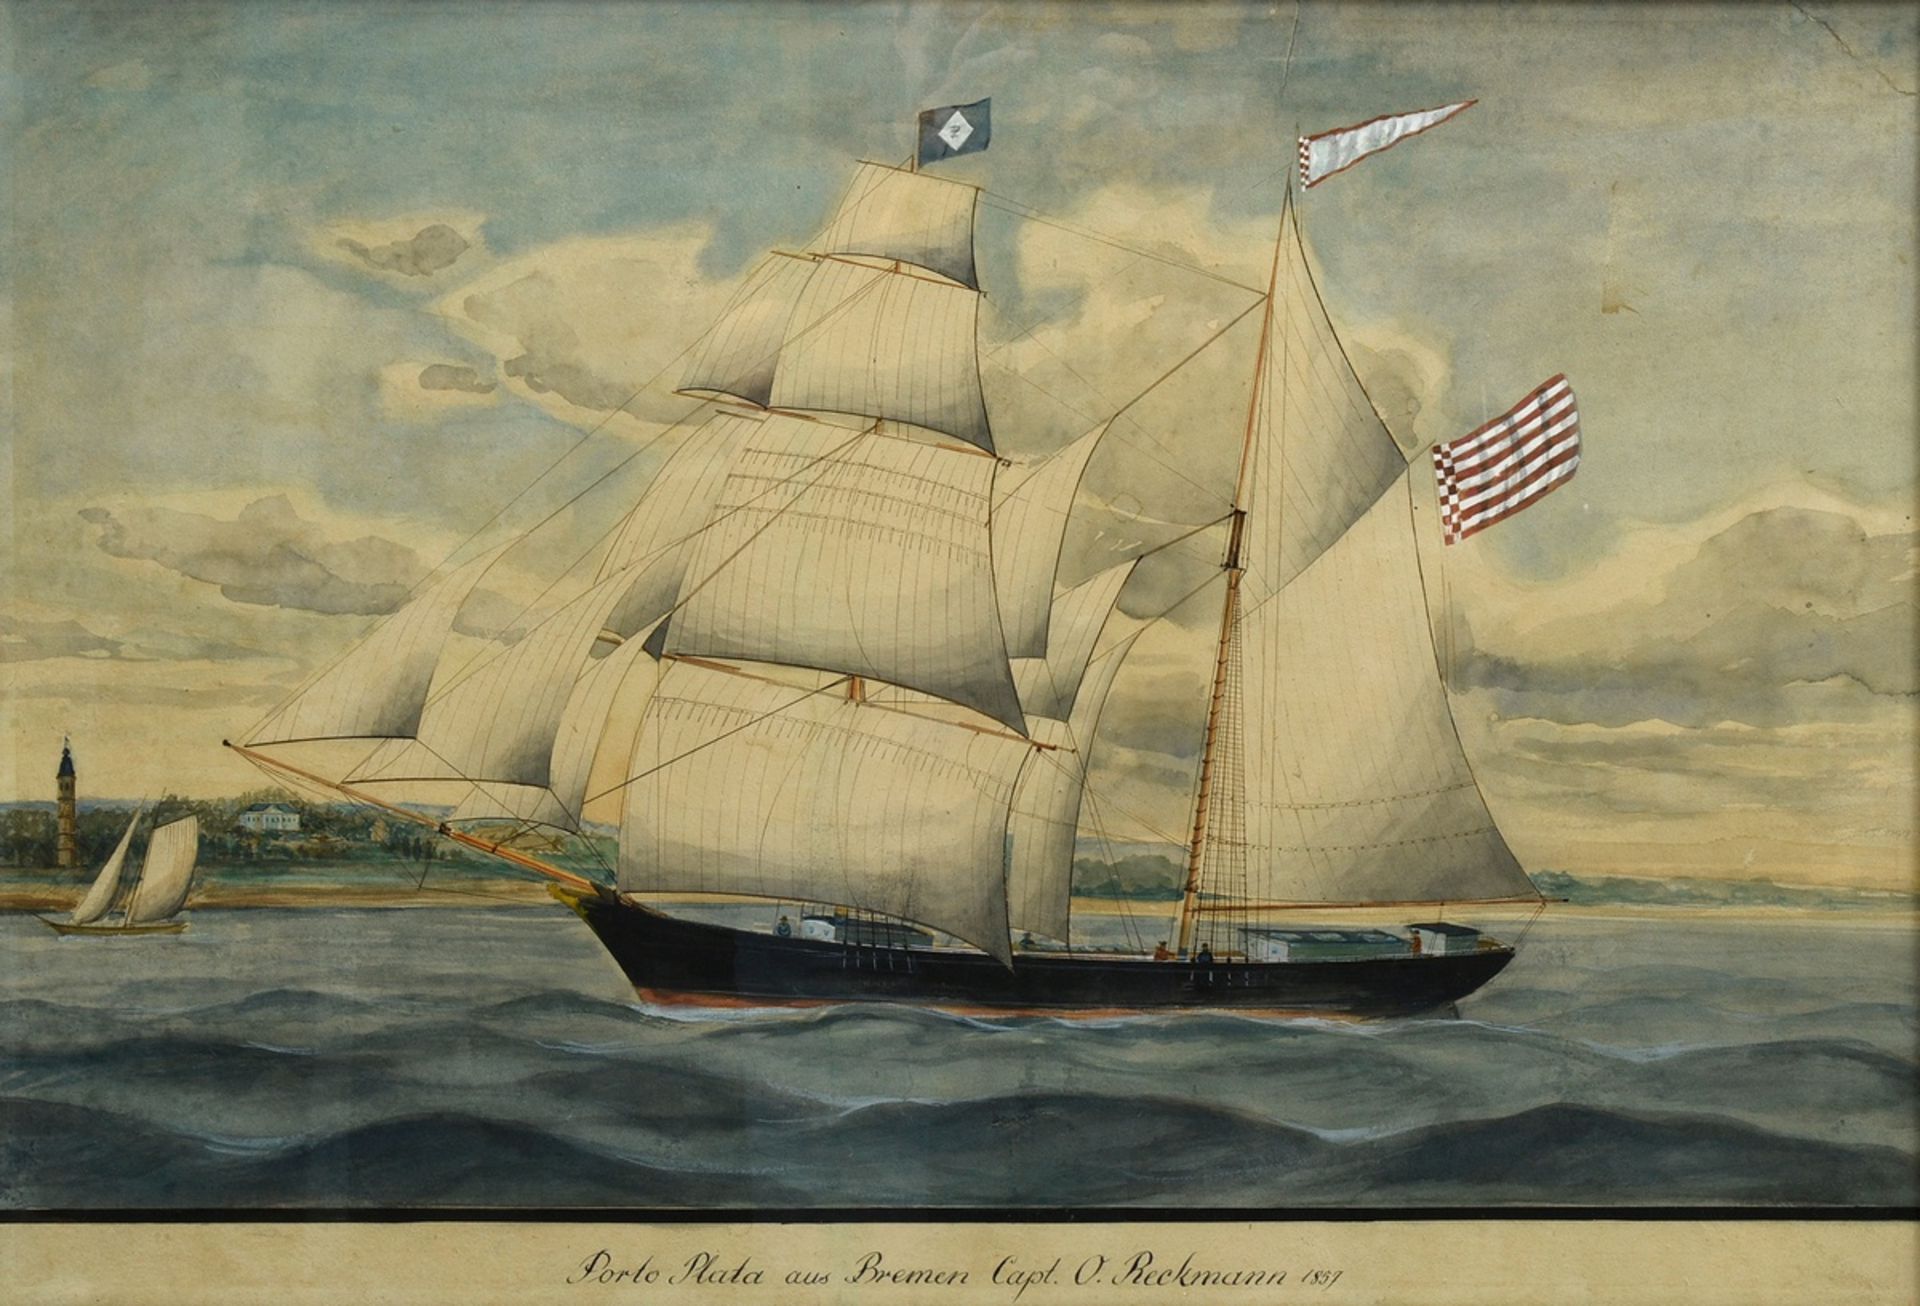 Unbekannter Marinemaler des frühen 20.Jh. "Kapitänsbild Porto Plata aus Bremen Capt. O. Reckmann 18